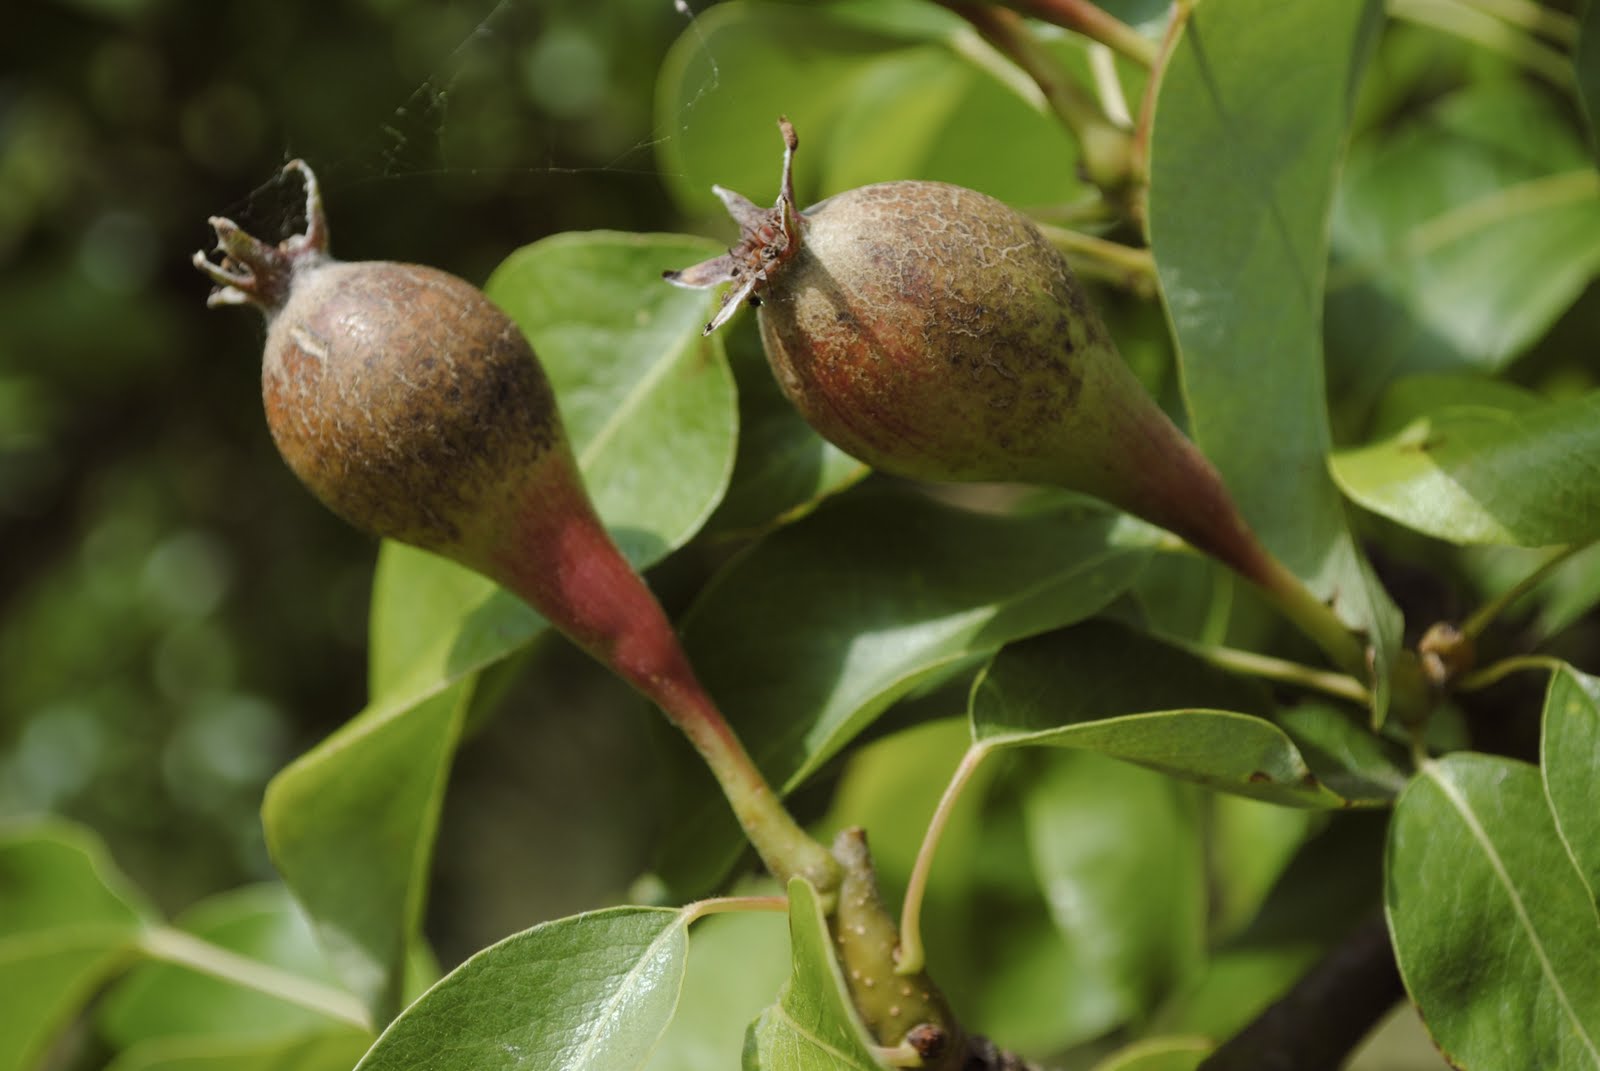 Where do pears grow?